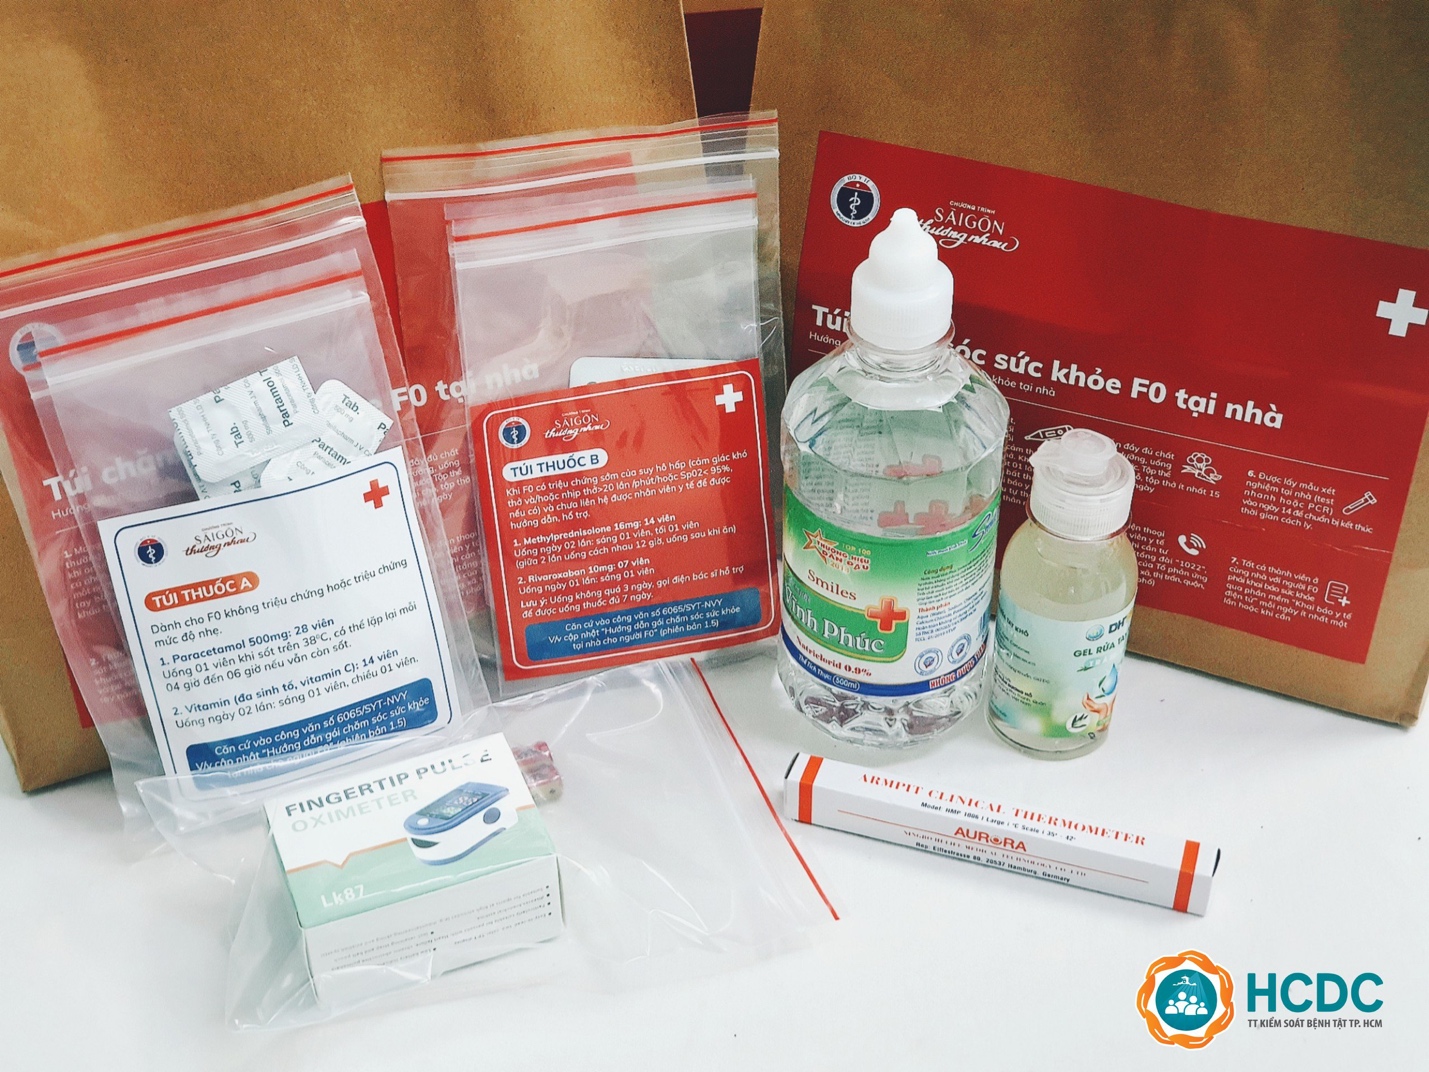 UBND huyện ban hành kế hoạch quản lý và chăm sóc sức khoẻ người nhiễm Covid-19 tại nhà